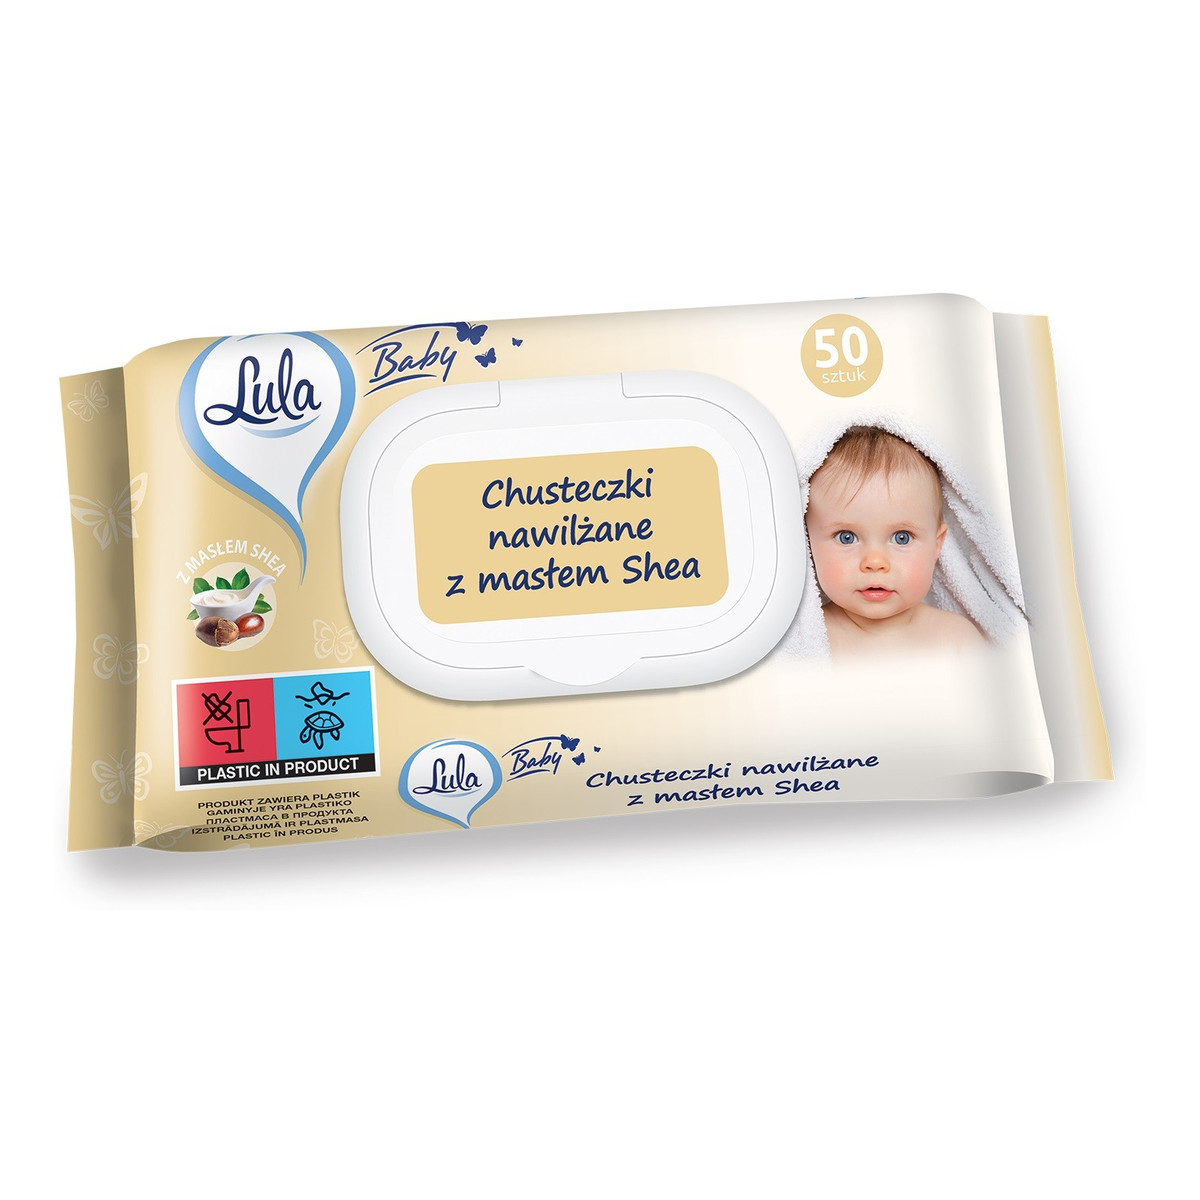 Lula Baby Chusteczki nawilżane dla niemowląt i dzieci-z masłem shea 1op.-50szt